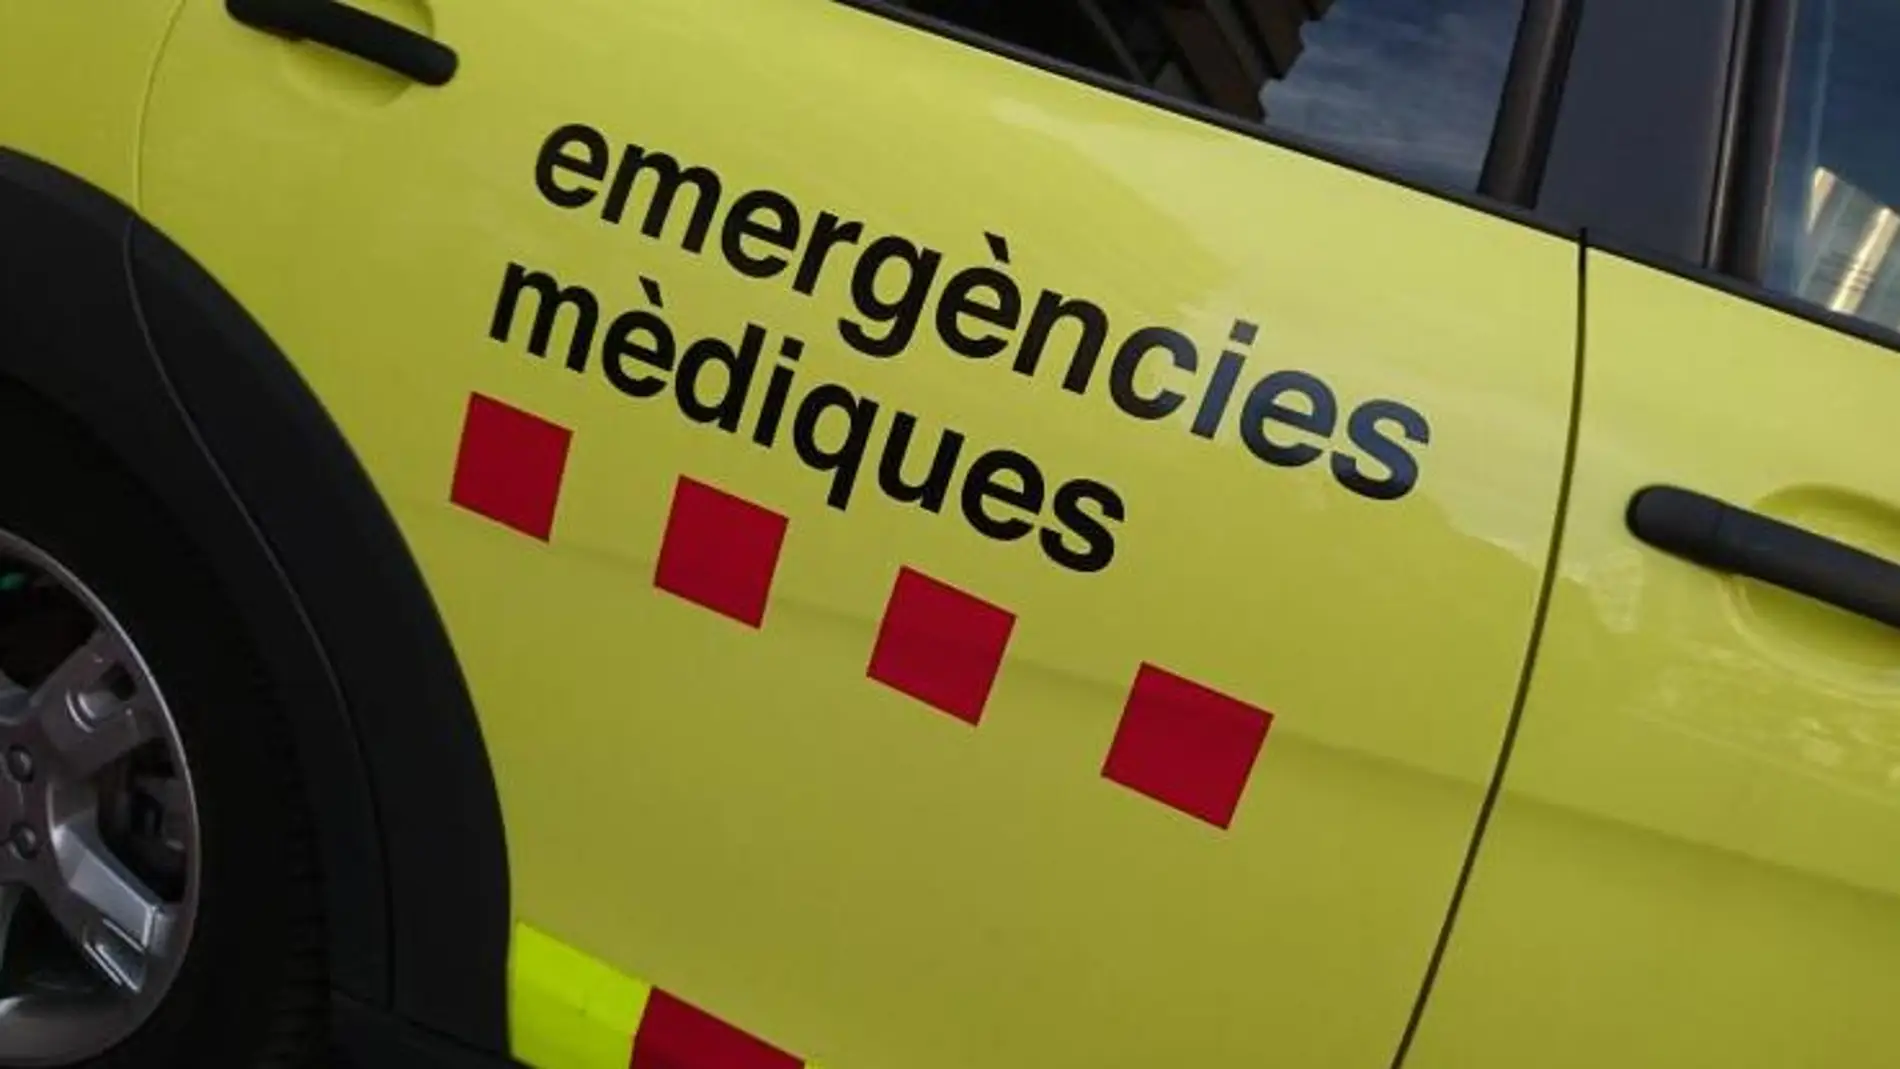 Emergencias médicas